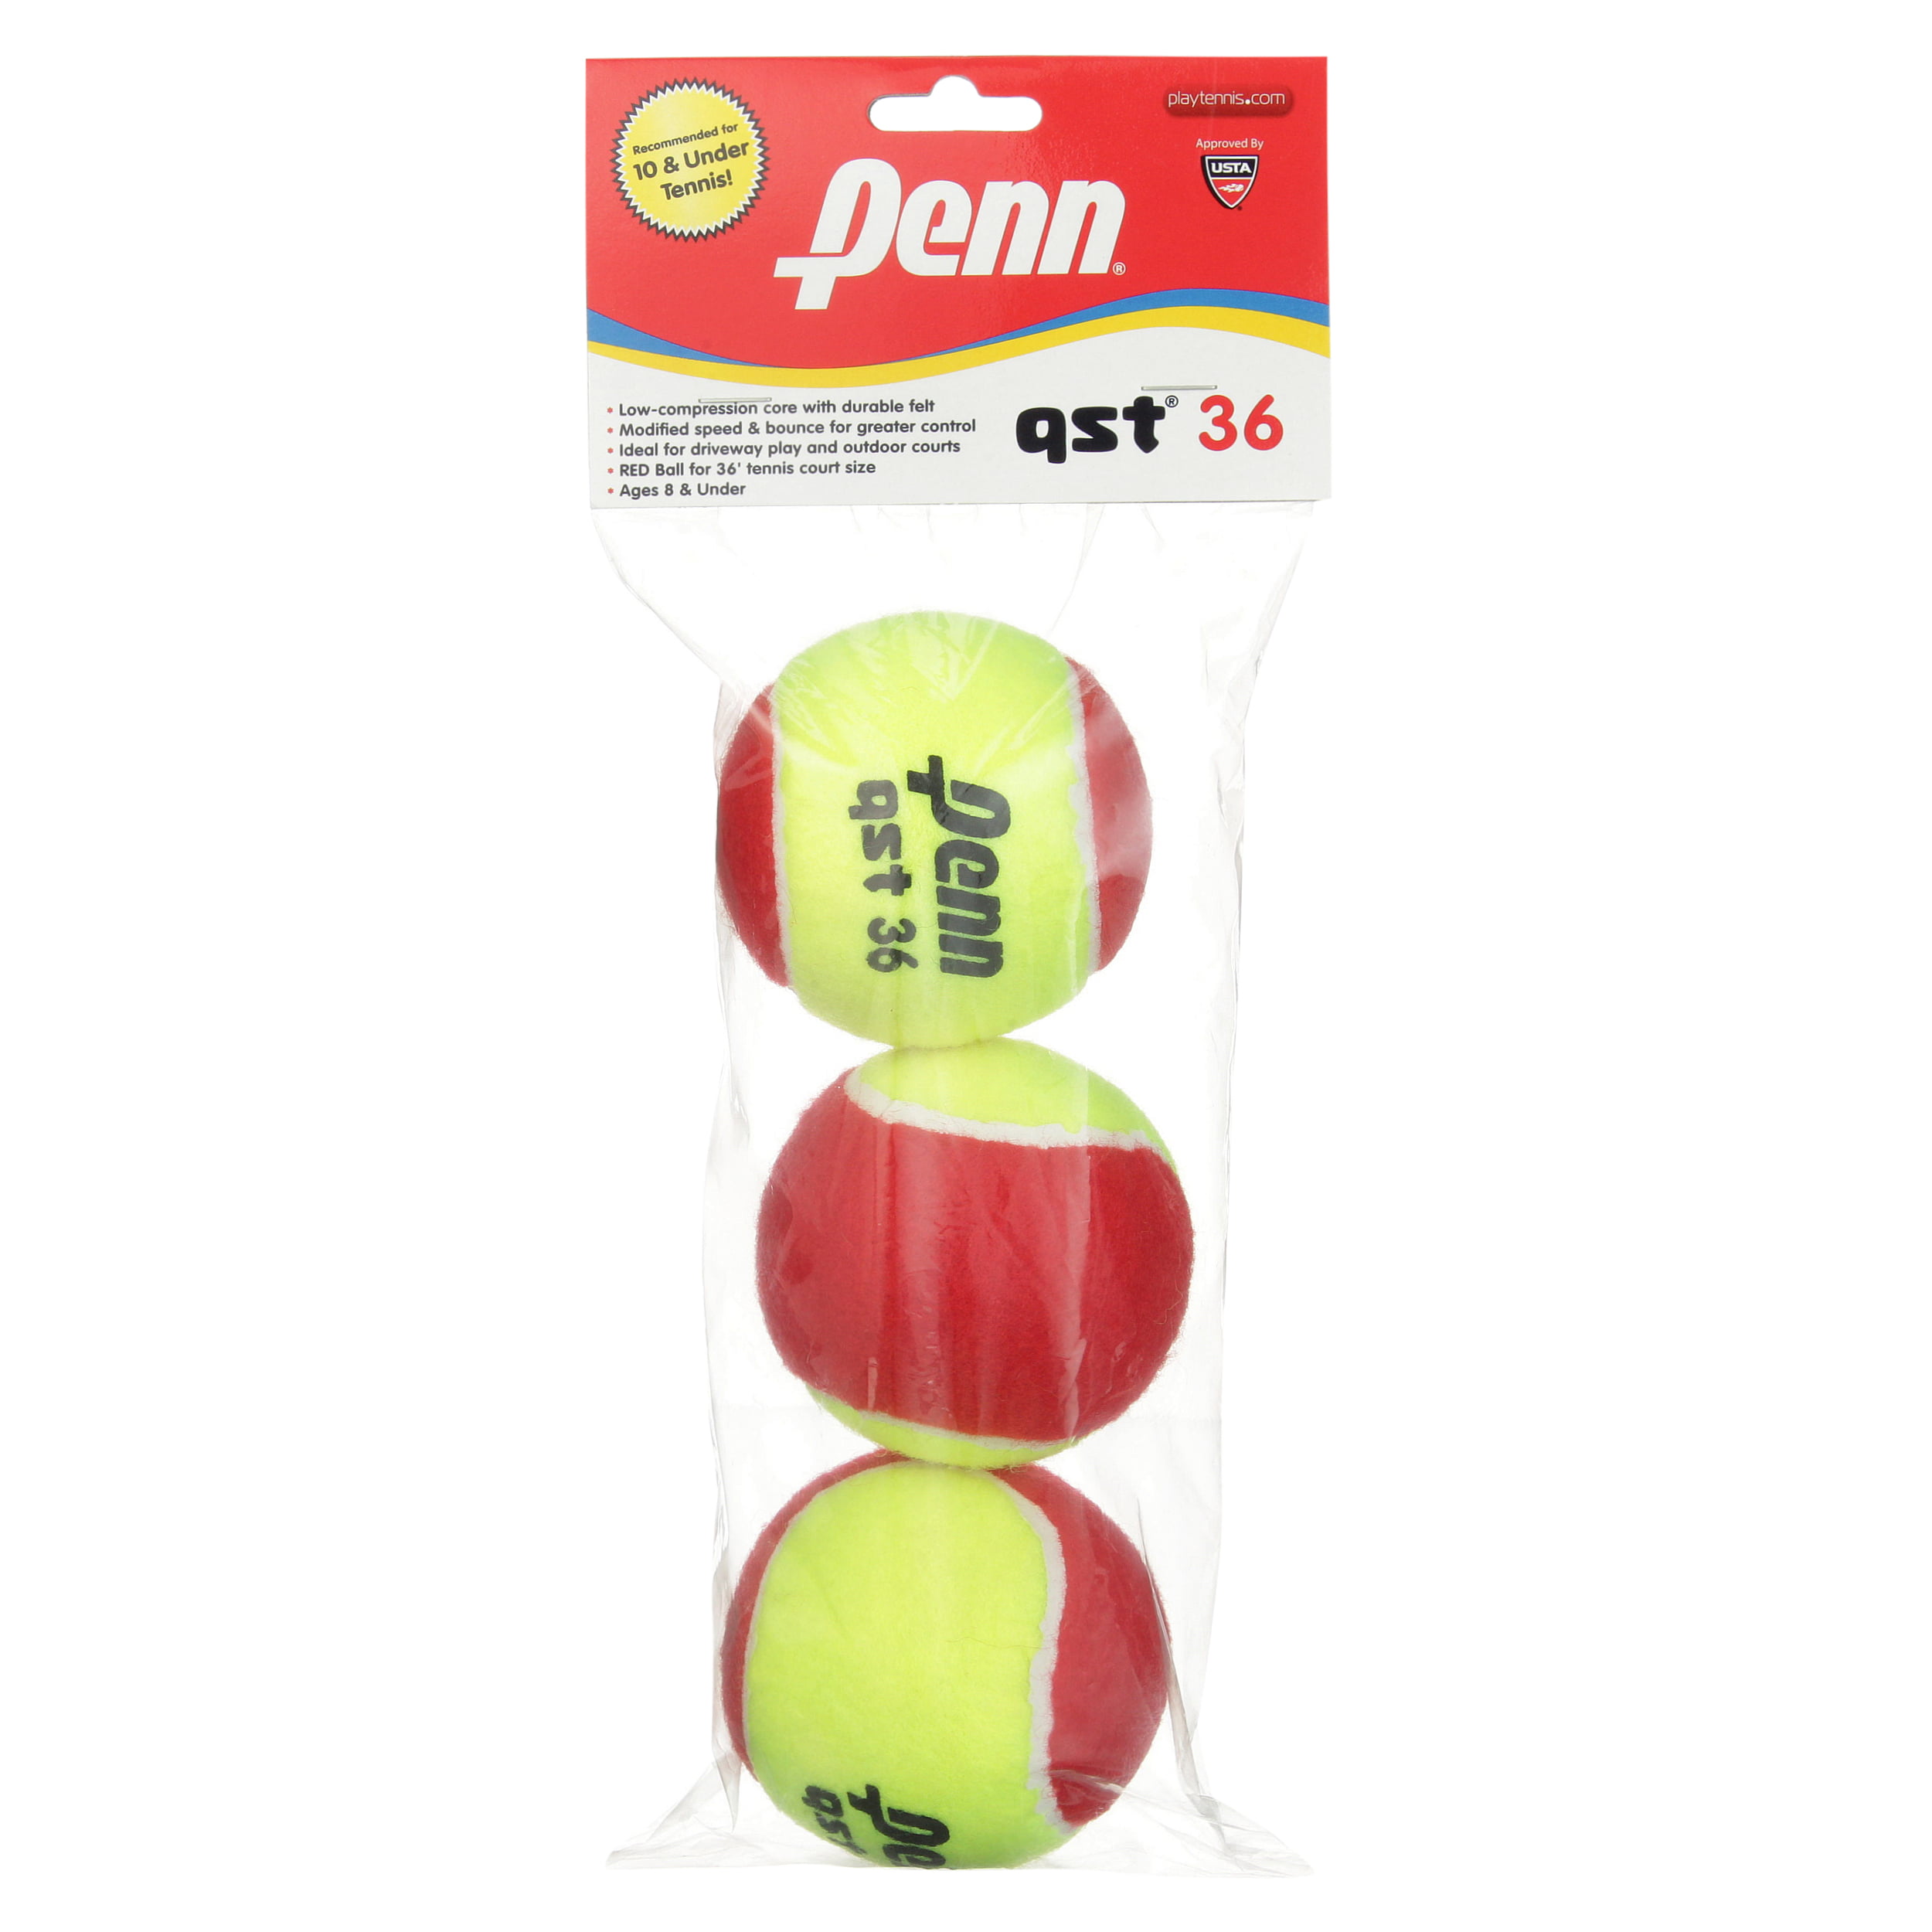 Penn red/yellow tennis balls 12 pack Qst 36 